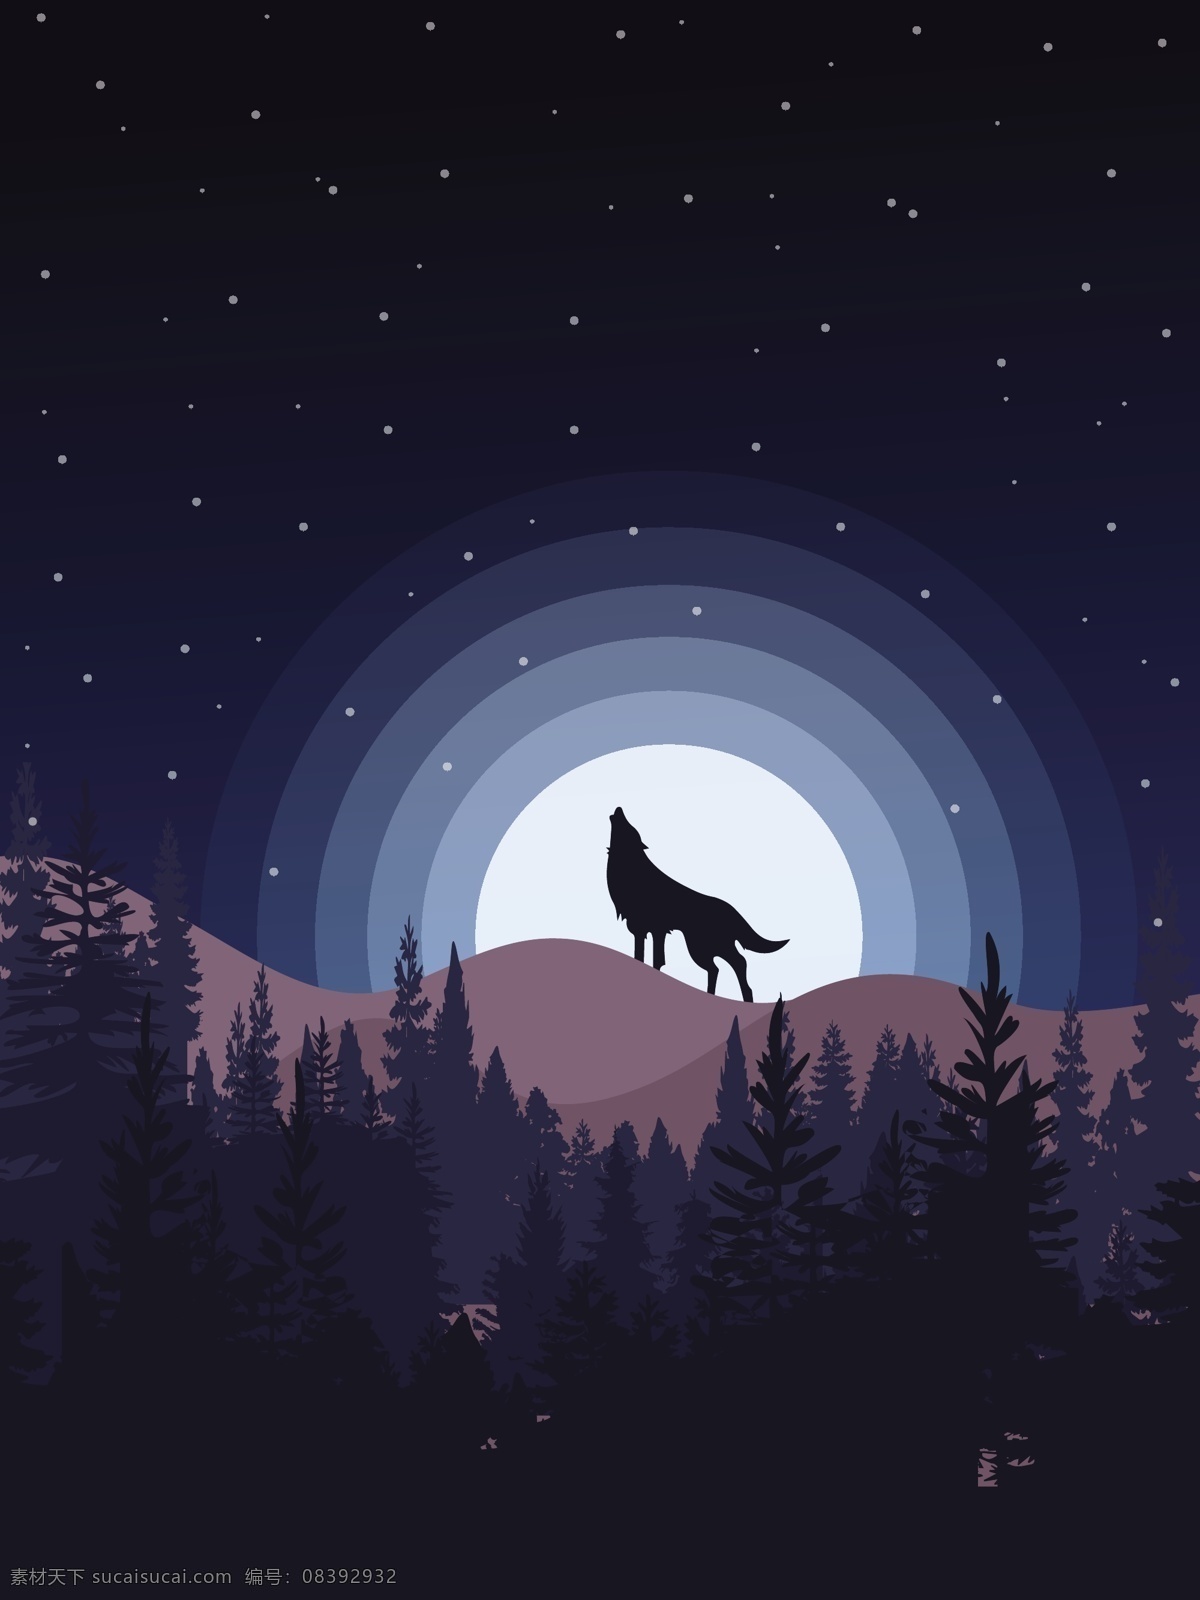 山顶 上 狼 背景 图 广告背景 广告 背景素材 底纹背景 月亮 蓝色天空 星空 背景图